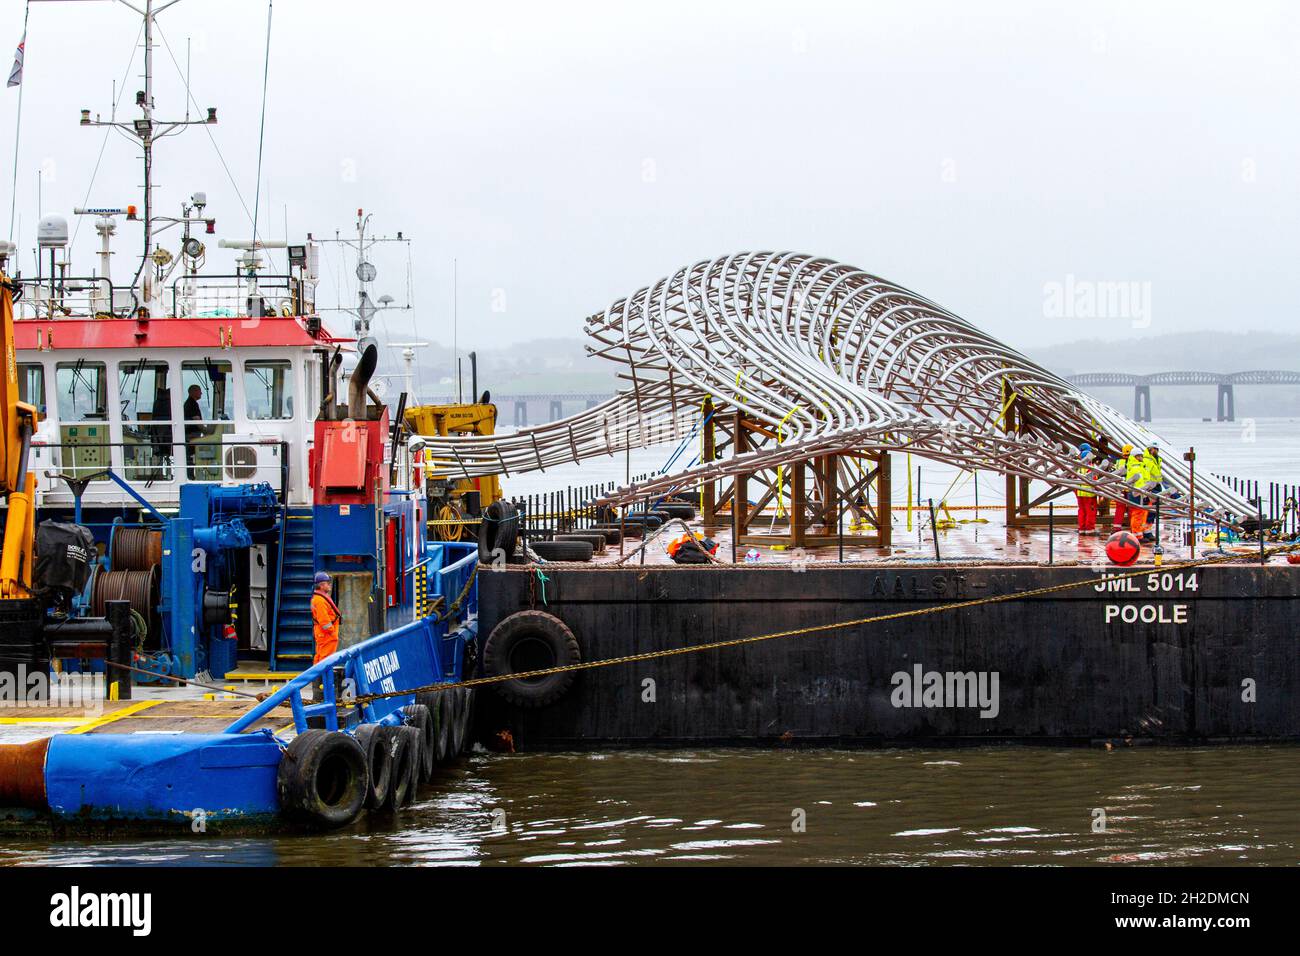 La sculpture de baleine à bosse géant de 1 m £, d'une hauteur de 36 mètres et de 22 tonnes, est arrivée pour être installée à côté du V&A Design Museum à Dundee, en Écosse Banque D'Images